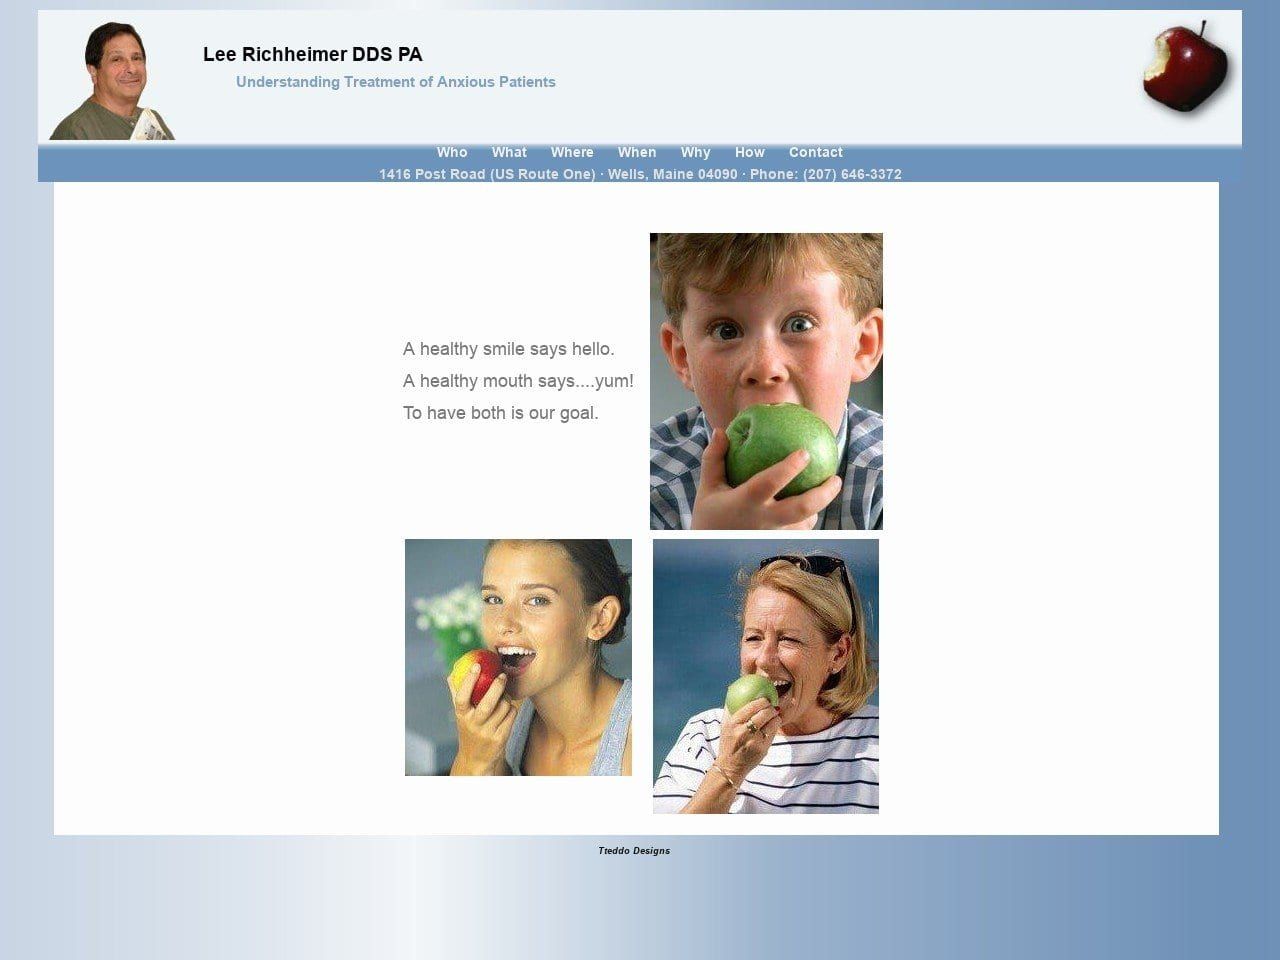 Lee Richheimer DDS PA Website Screenshot from lrdds.com